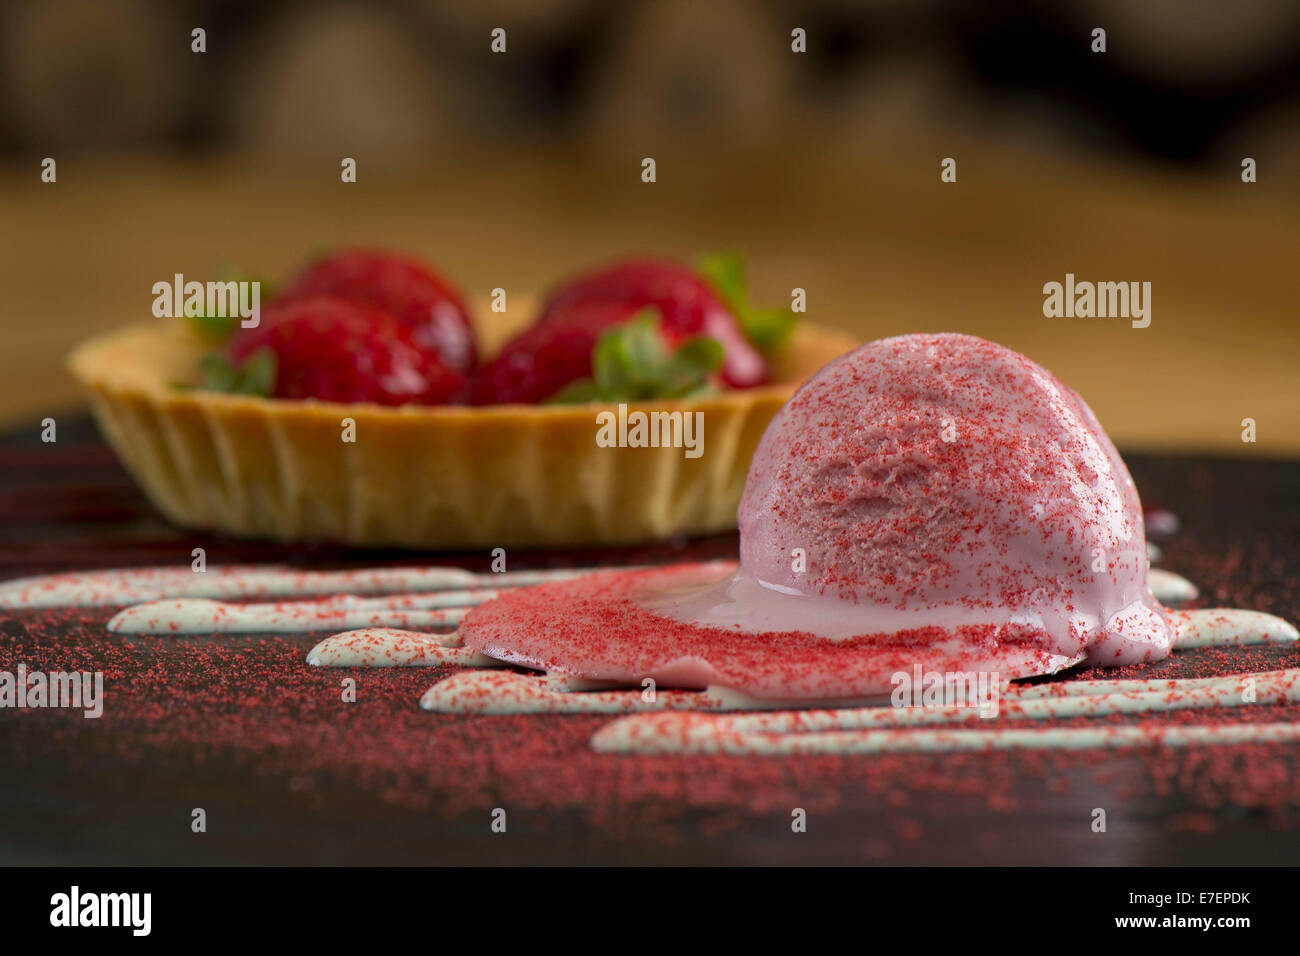 Gourmet-Melting Erdbeereis Dessert auf einer Schiefertafel Platte mit einer Schüssel Erdbeeren Stockfoto